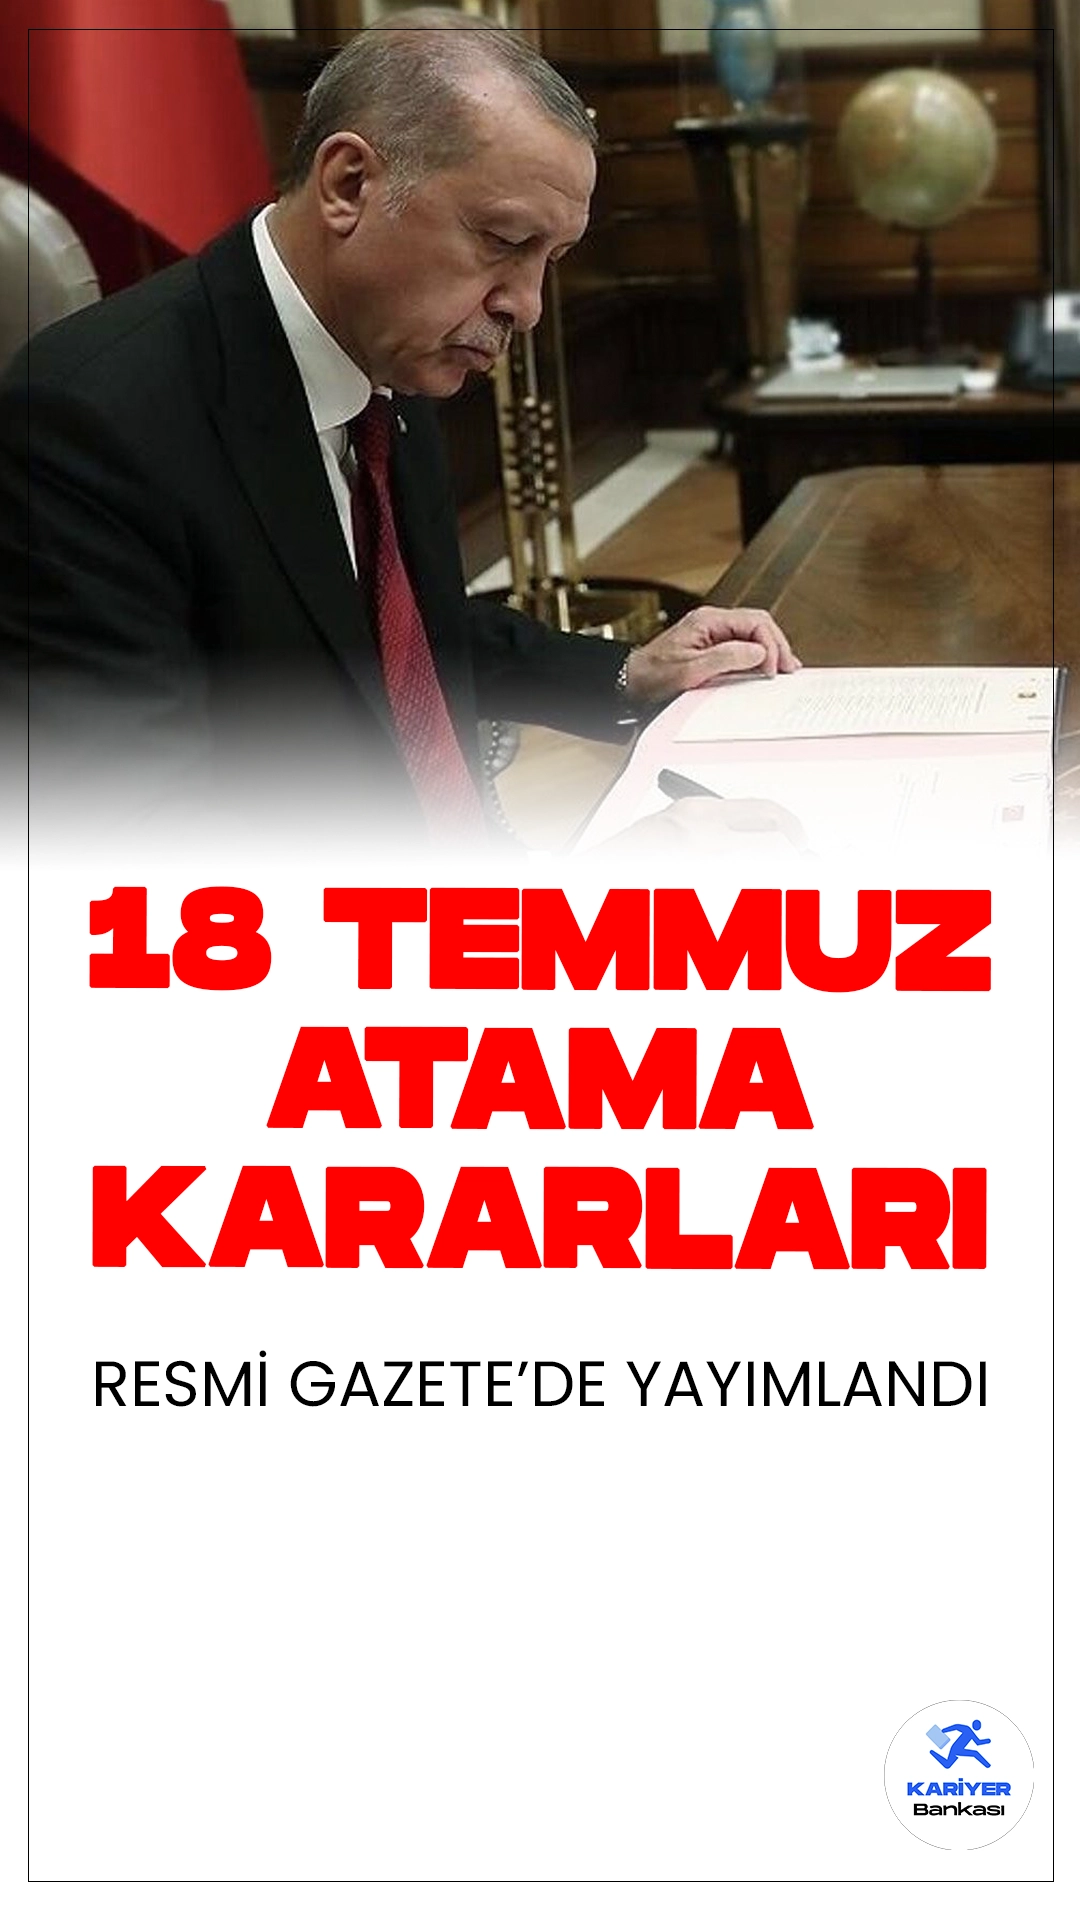 18 Temmuz Atama Kararları Resmi Gazete'de Yayımlandı.Cumhurbaşkanlığı atama kararları Resmi Gazete'de yayımlandı. Cumhurbaşkanı Recep Tayyip Erdoğan imzasıyla yayımlanan kararlara göre, çeşitli bakanlıklar ve kamu kurumlarında önemli görev değişiklikleri gerçekleşti.